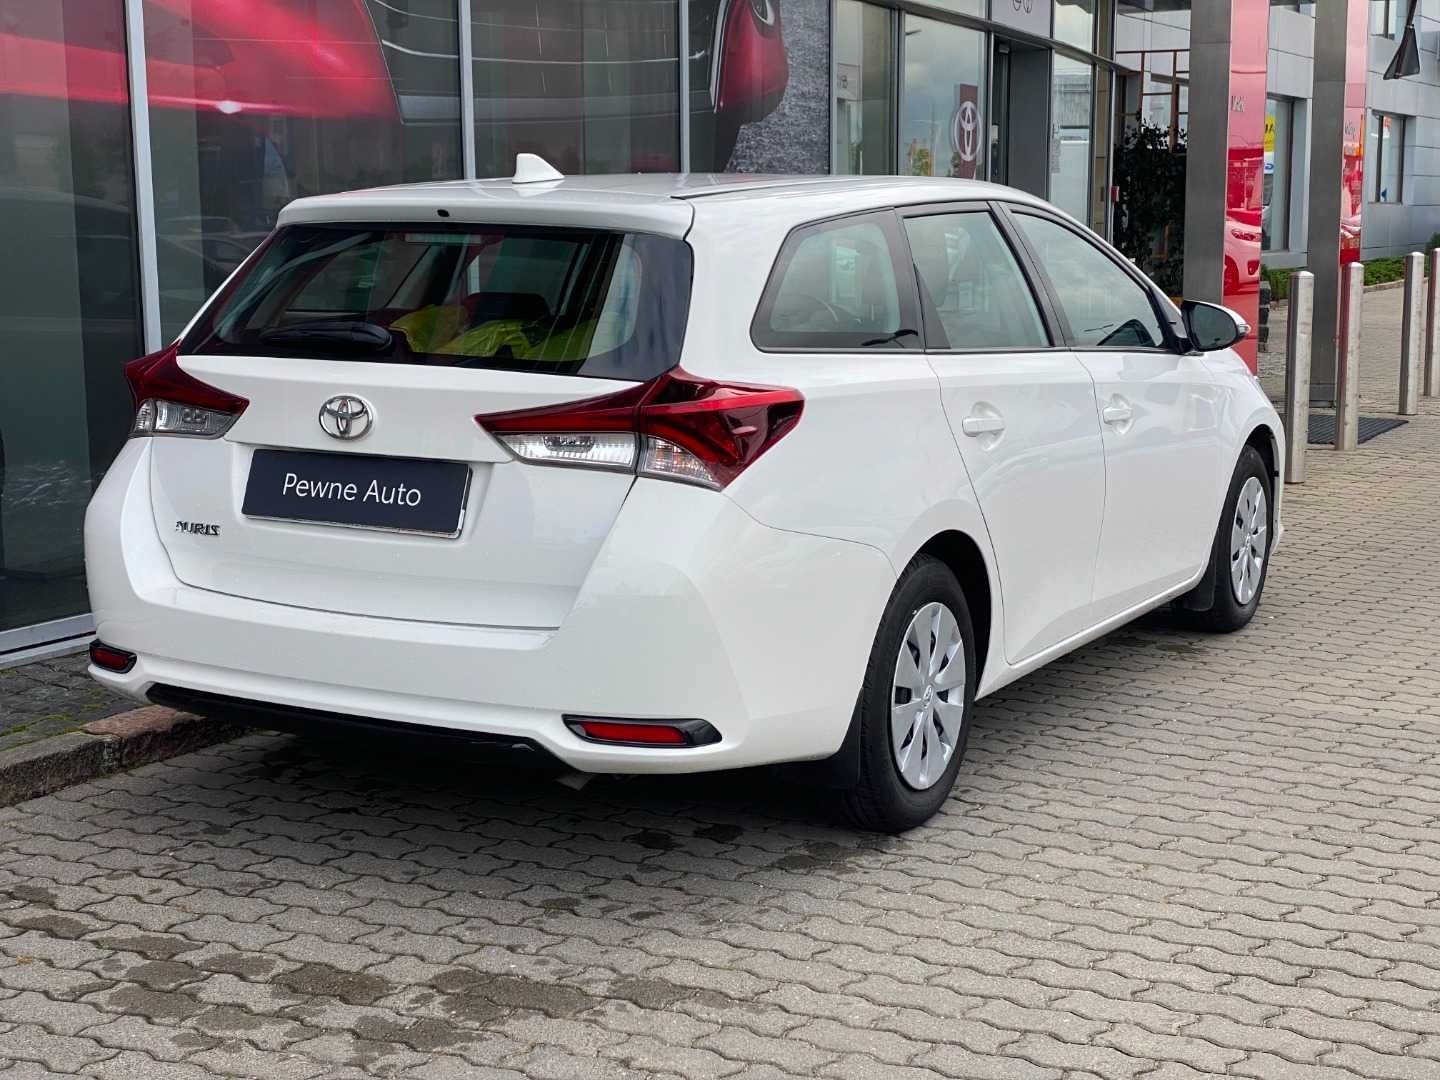 Toyota Auris 1,6 132 KM LPG, kombi 2019 stan bdb ekonomiczna jazda